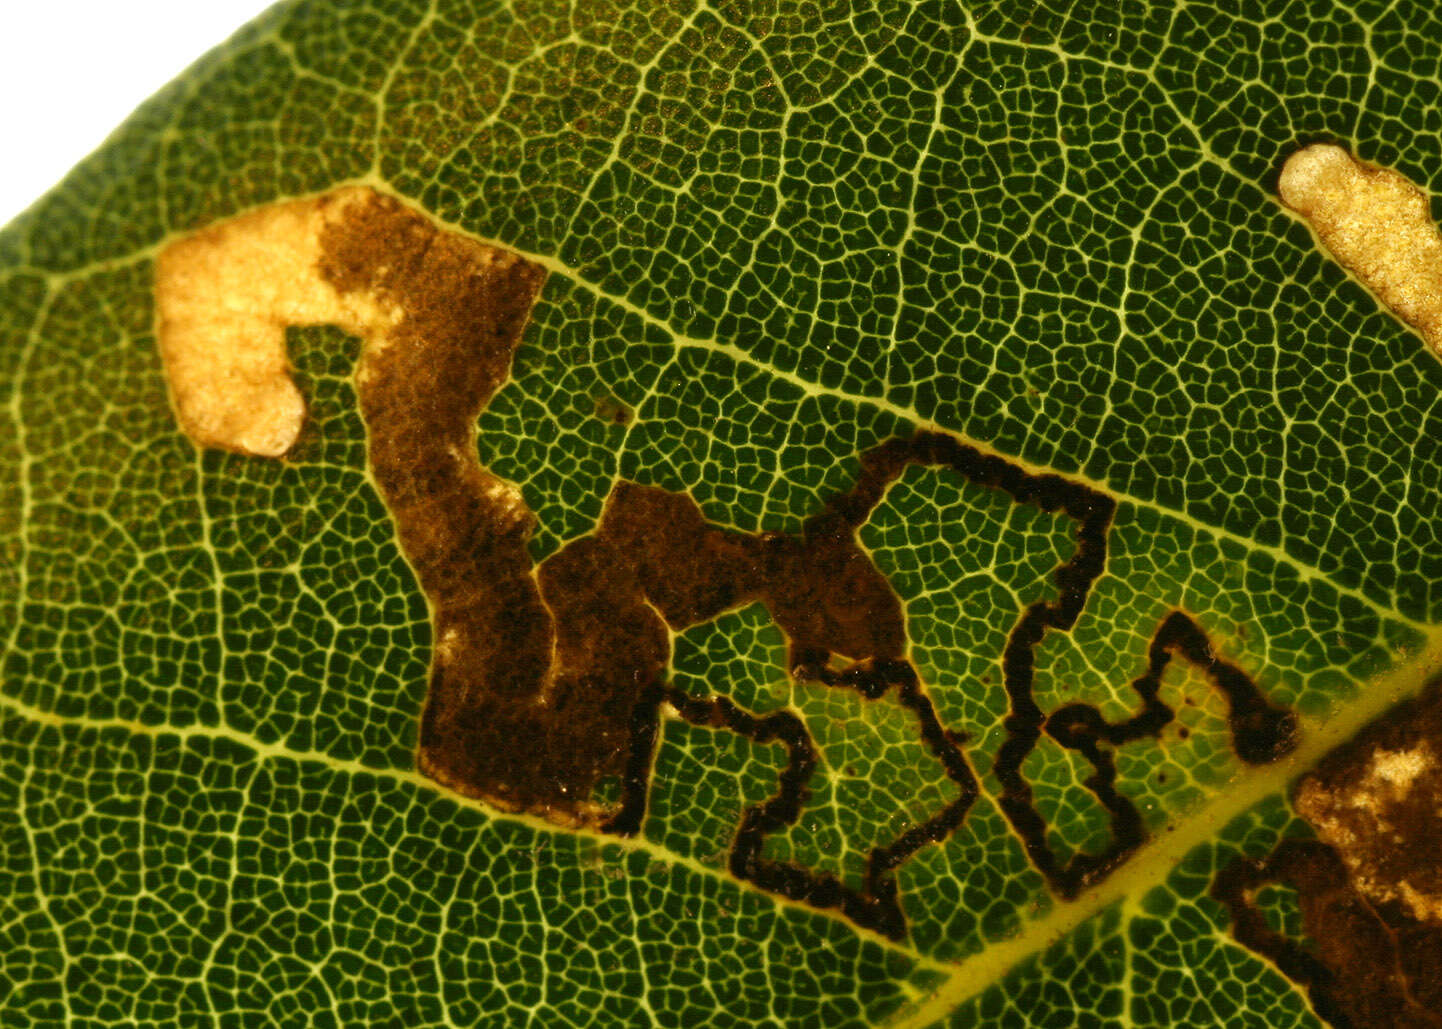 Image of Ectoedemia heringella (Mariani 1939) van Nieukerken 1985